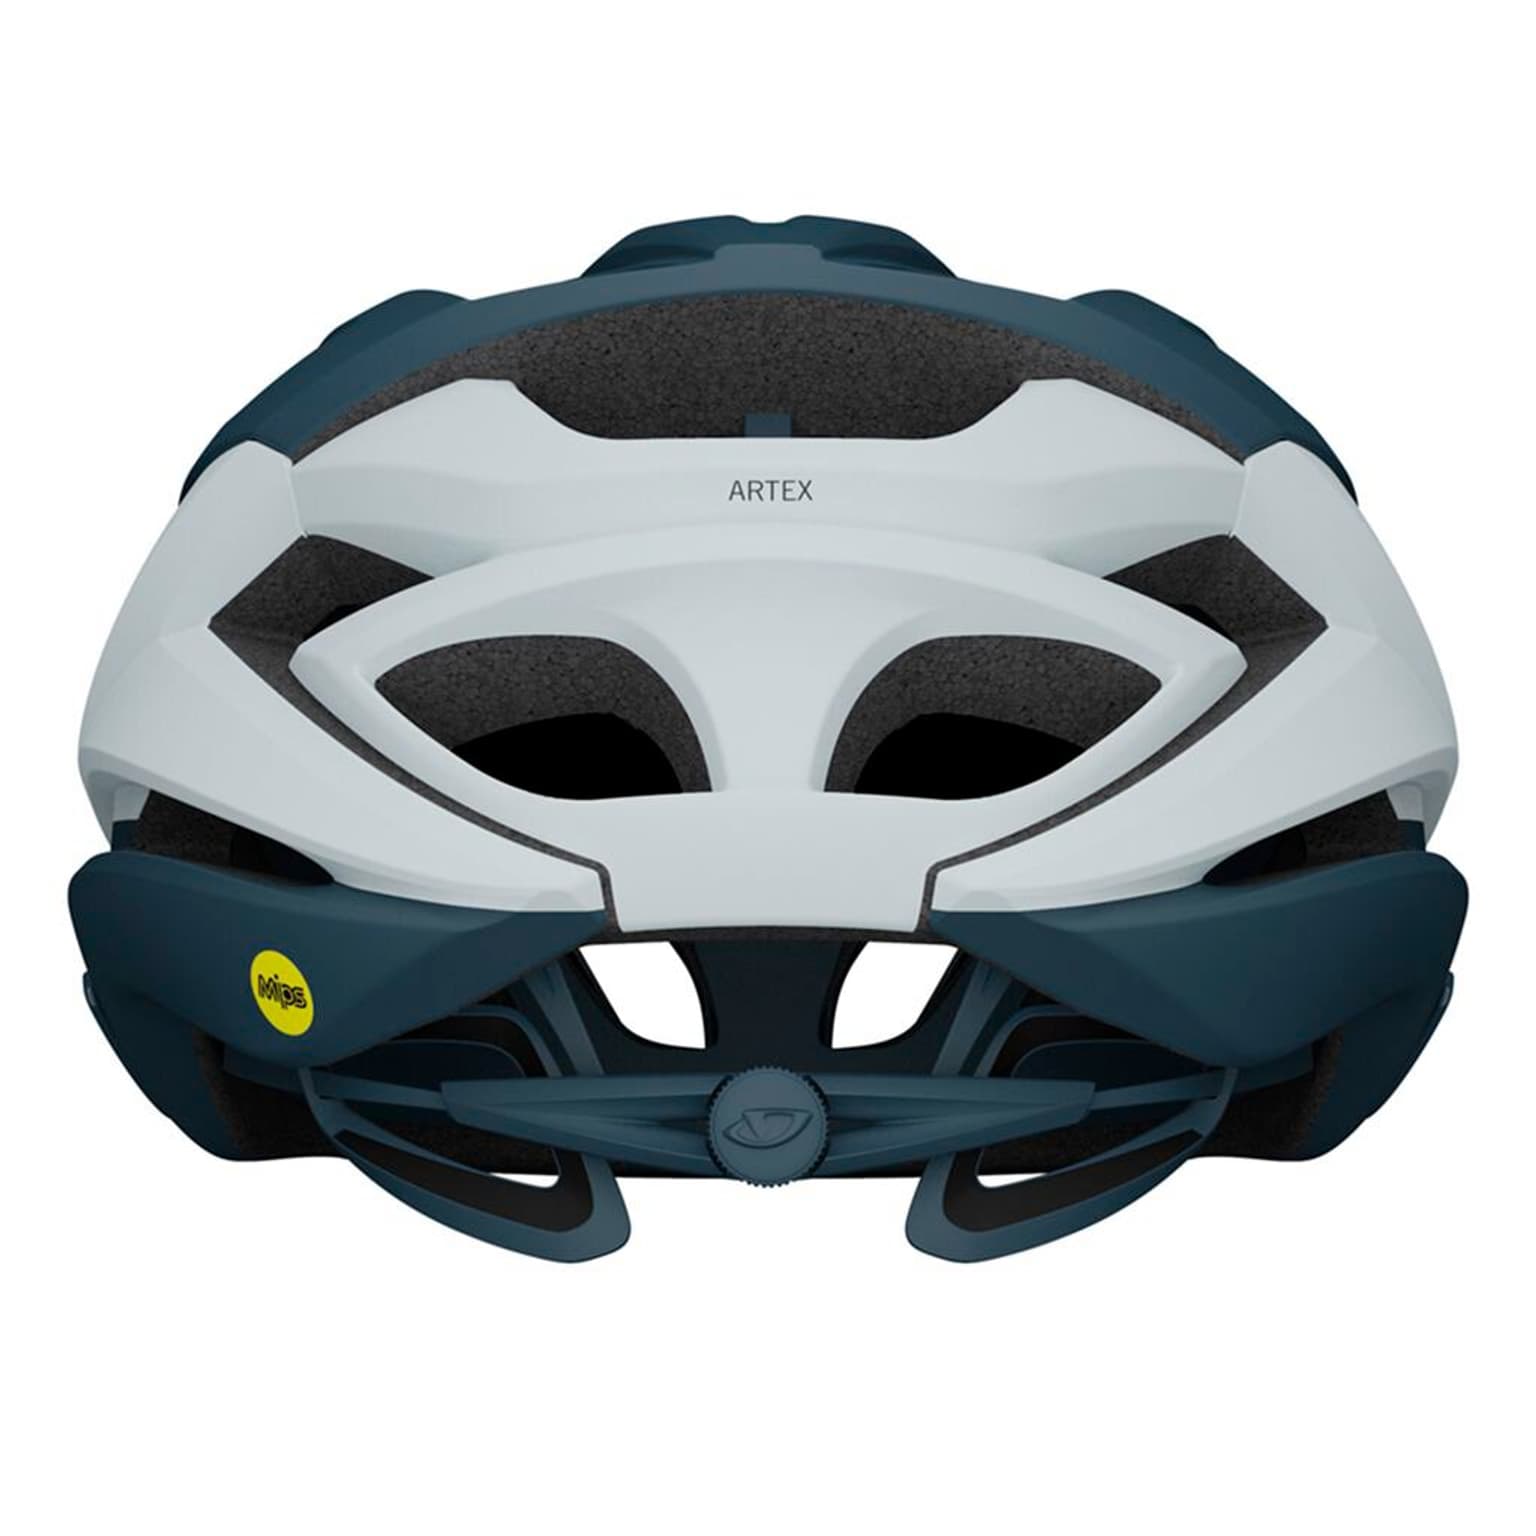 Giro Giro Artex MIPS Helmet Velohelm antracite 2